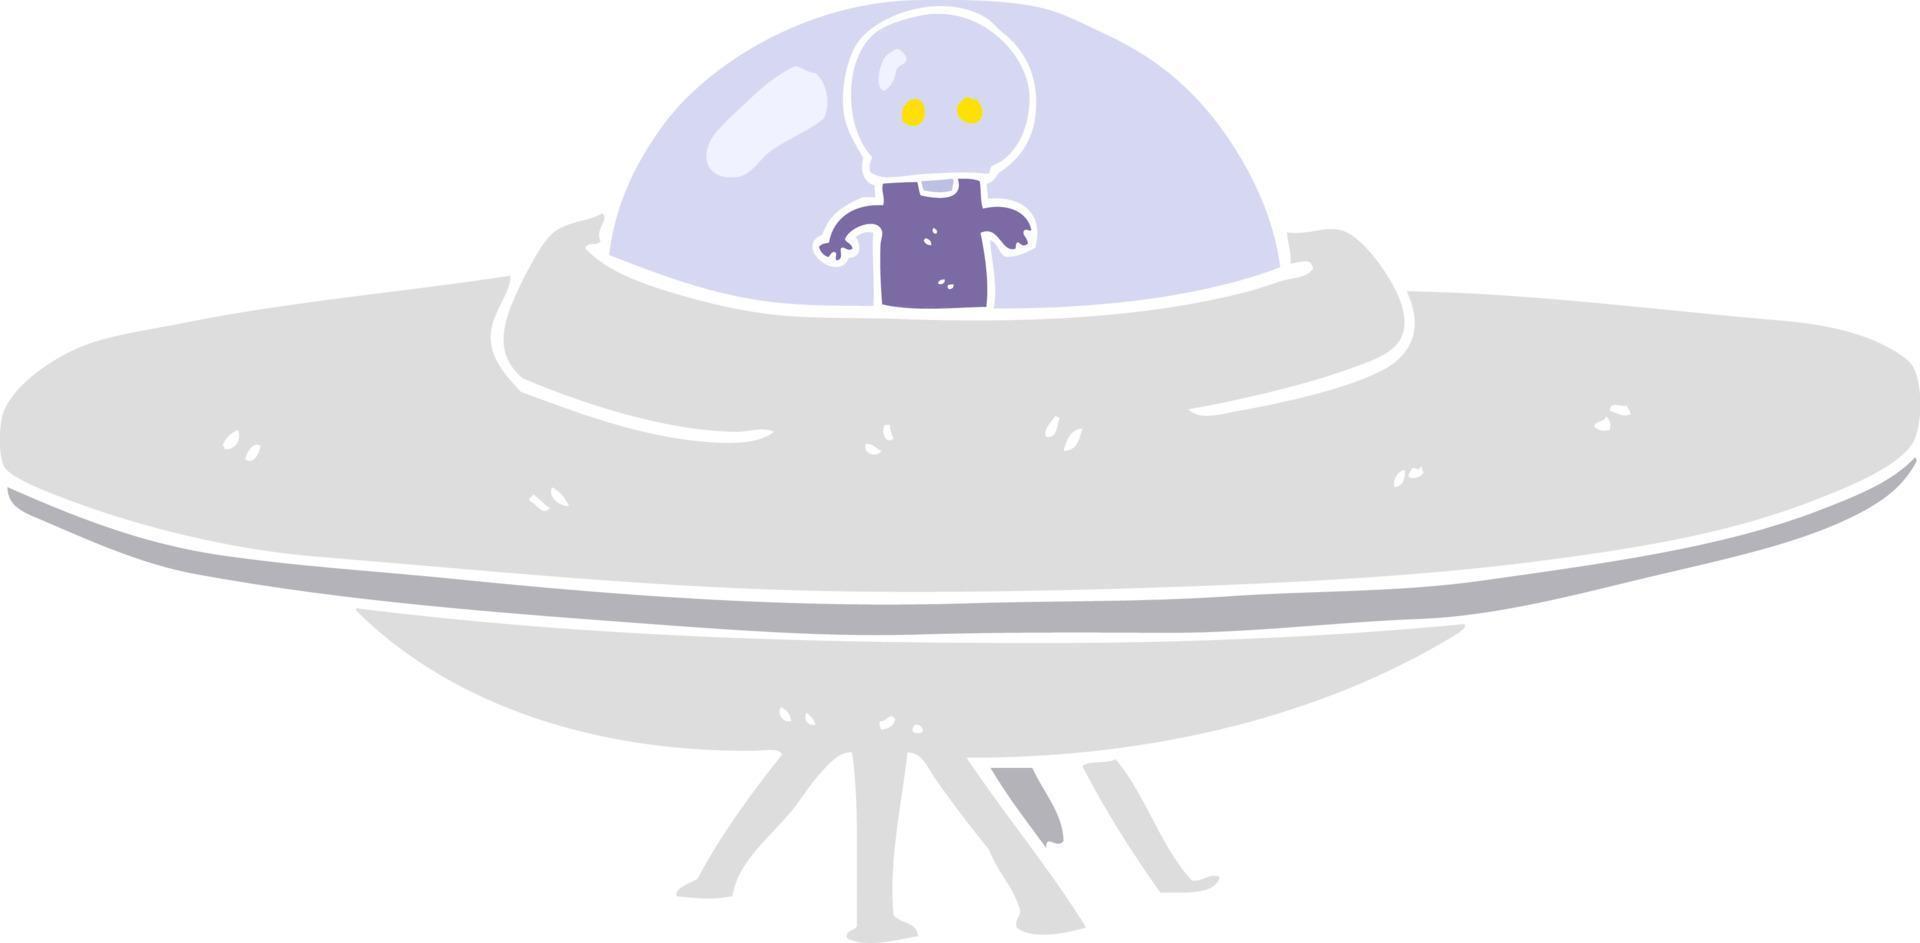 piatto colore illustrazione di alieno volante piattino vettore